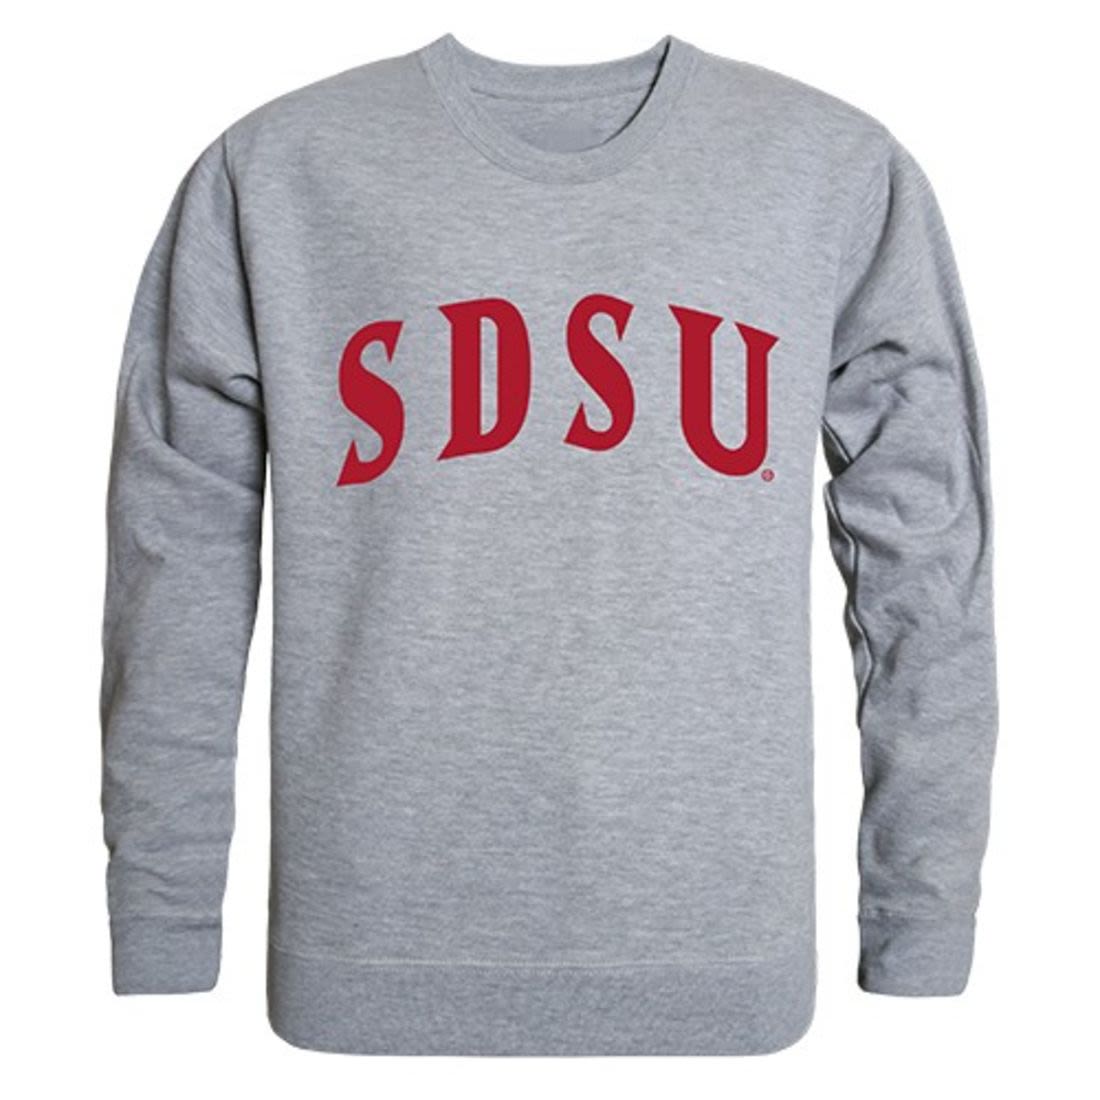 SDSU San Diego State University Game Day Crewneck Pullover Sweatshirt Sweater Heather Grey-Campus-Wardrobe